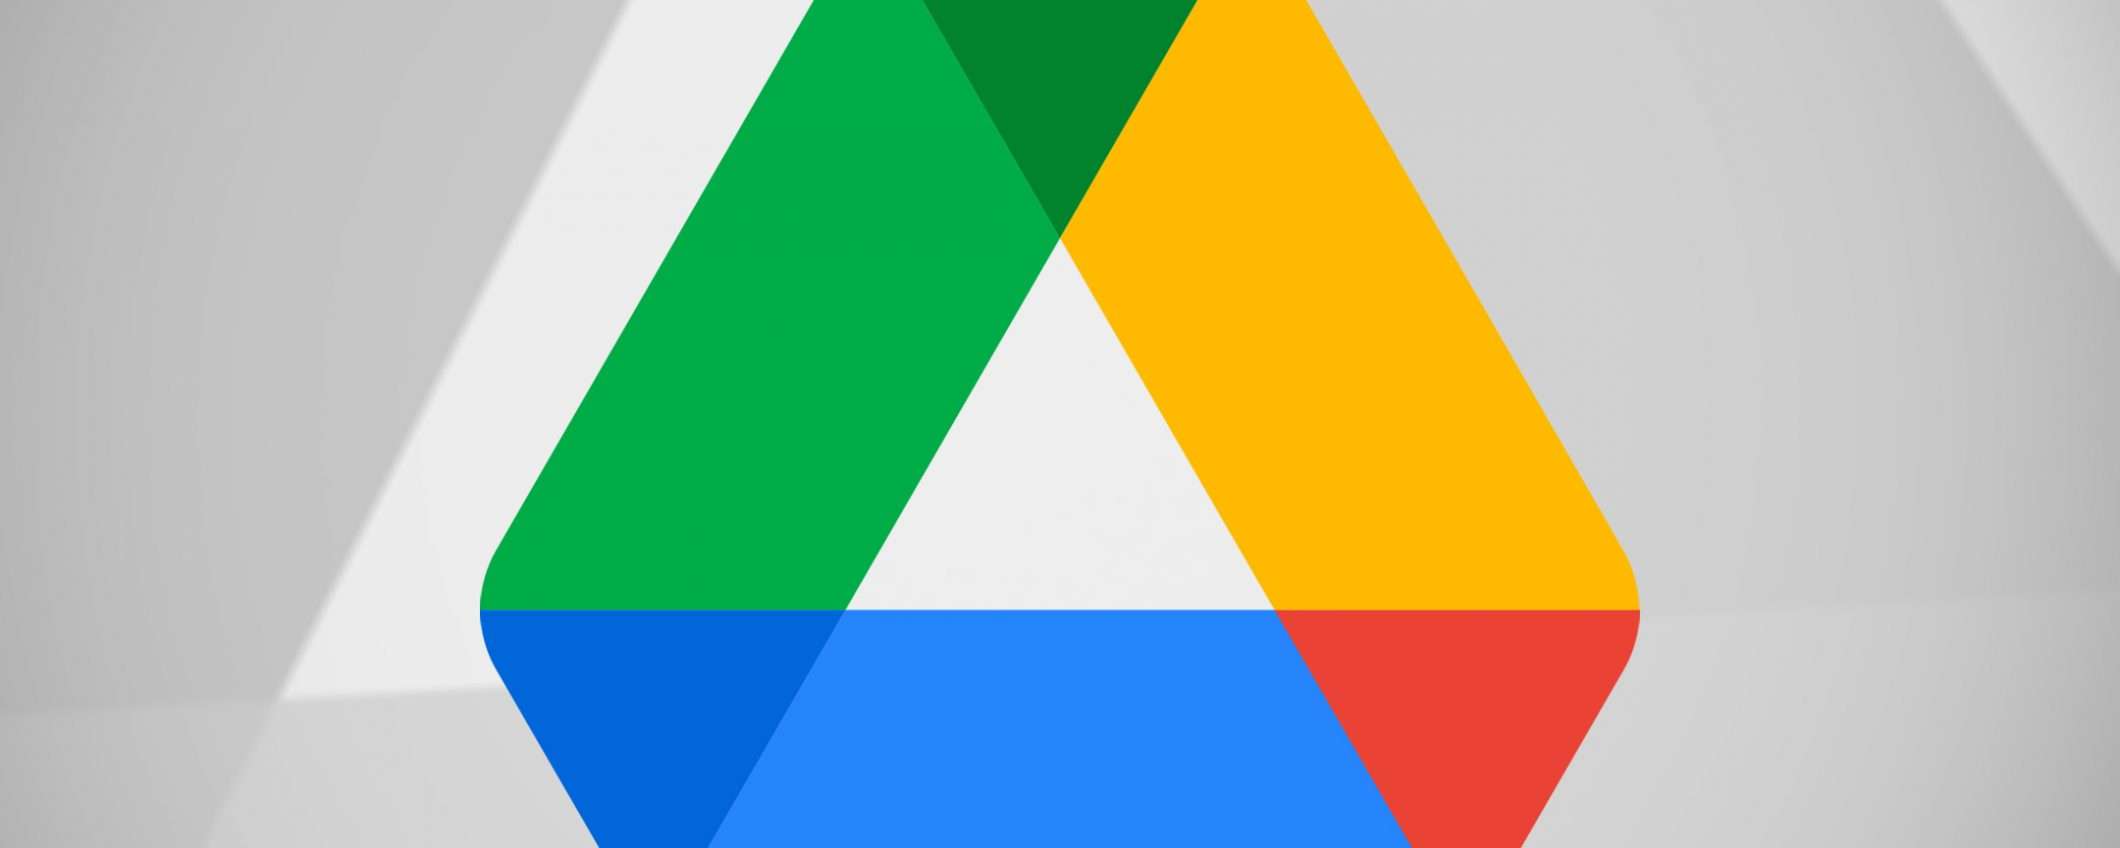 Google Drive migliora la ricerca su Android e iOS